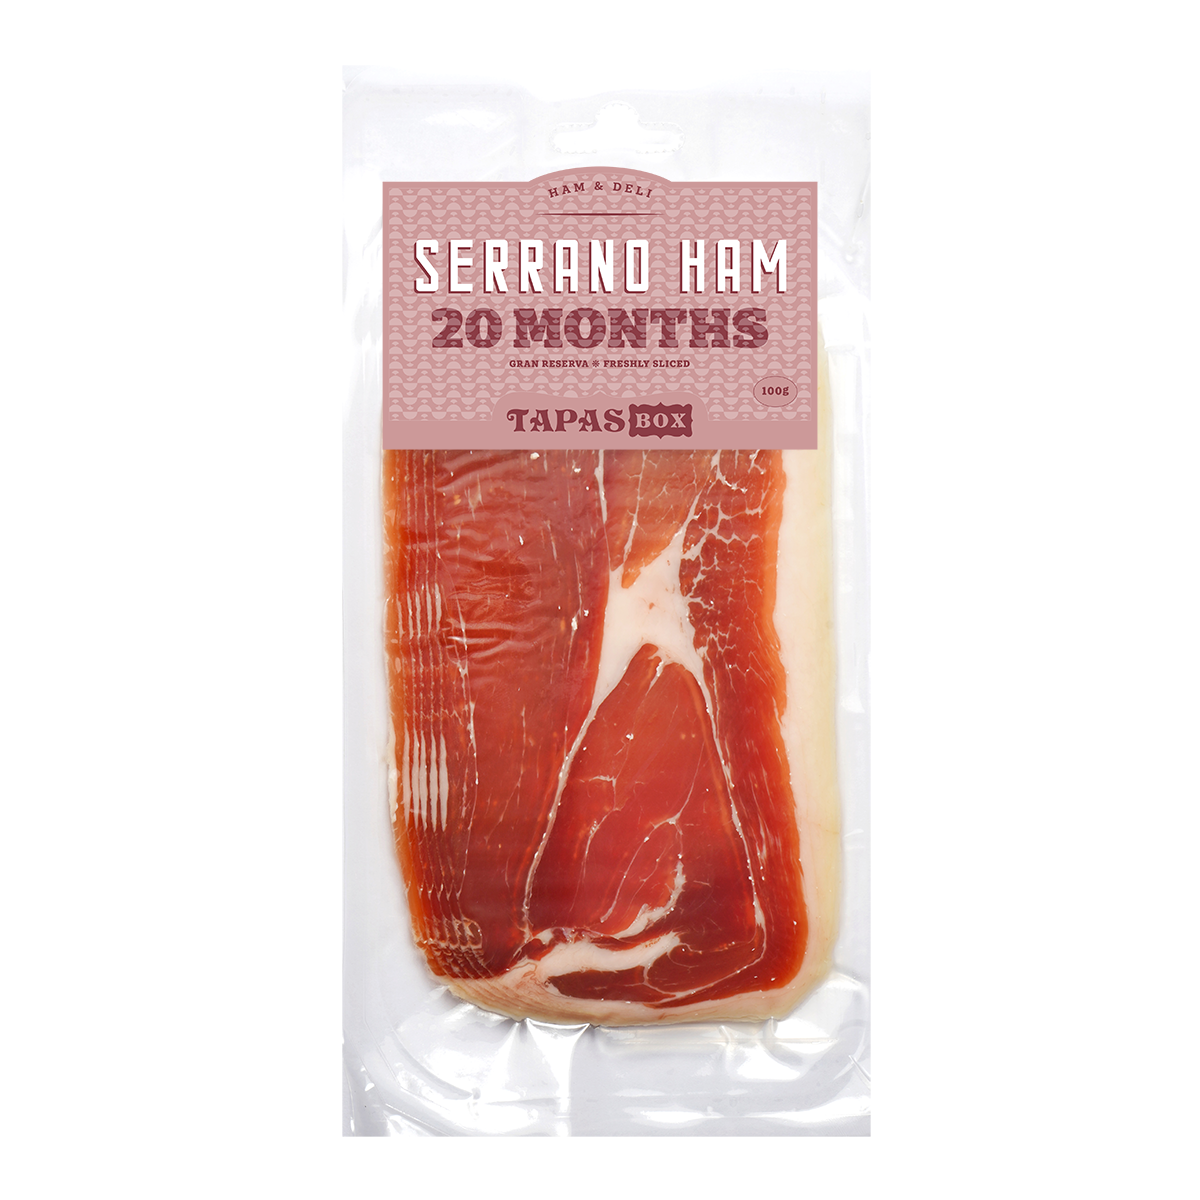 Serrano Ham 20 months